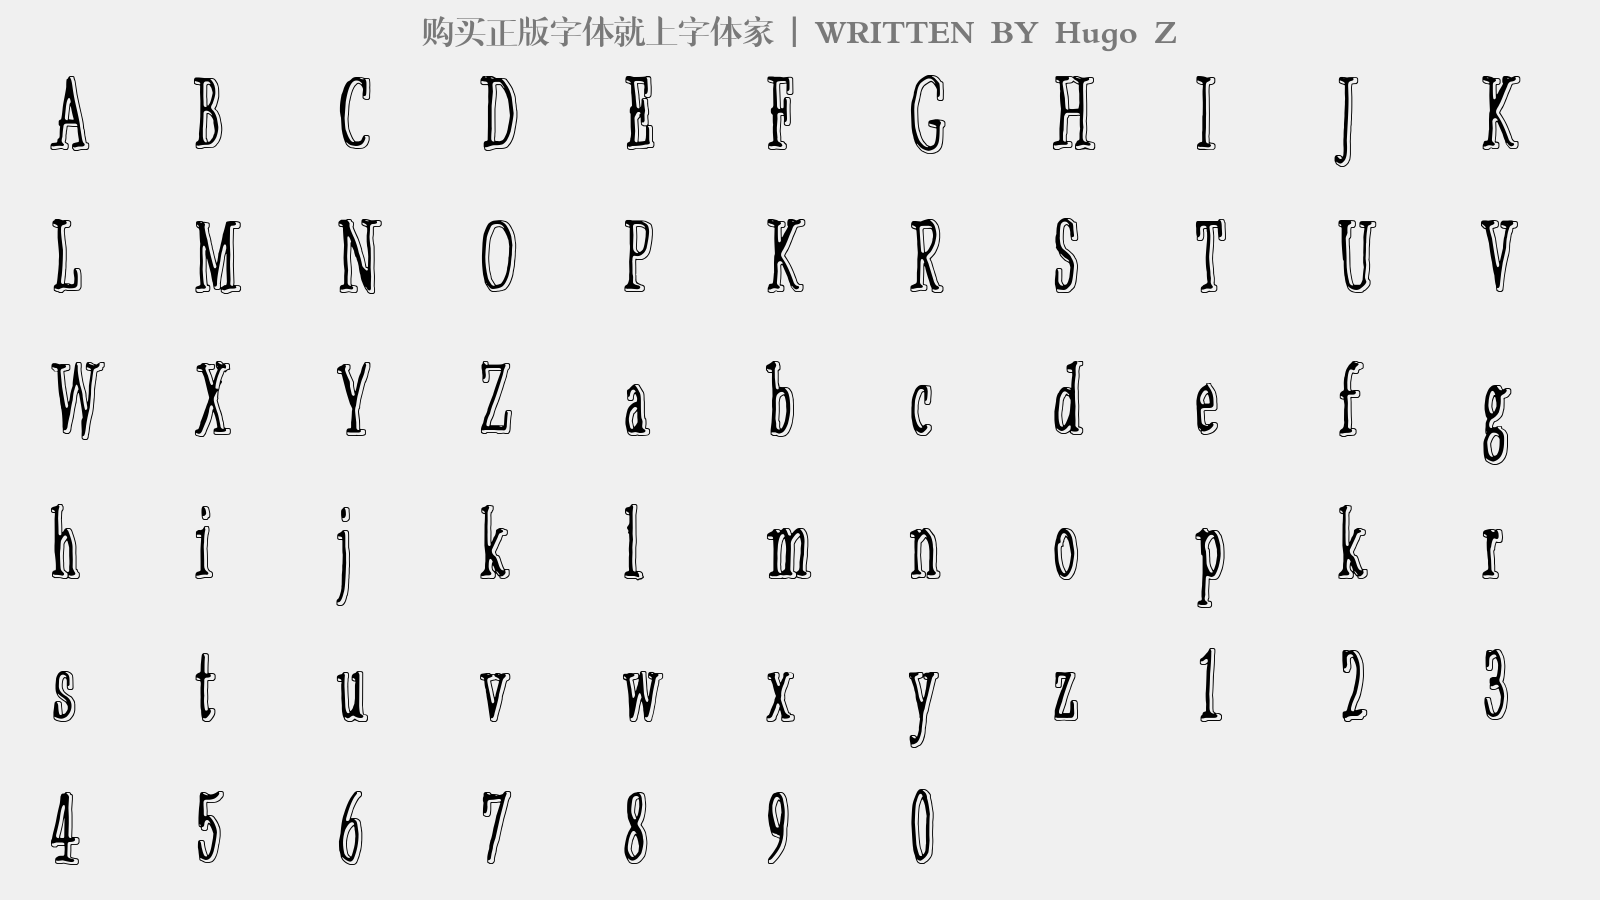 Hugo Z - 大写字母/小写字母/数字